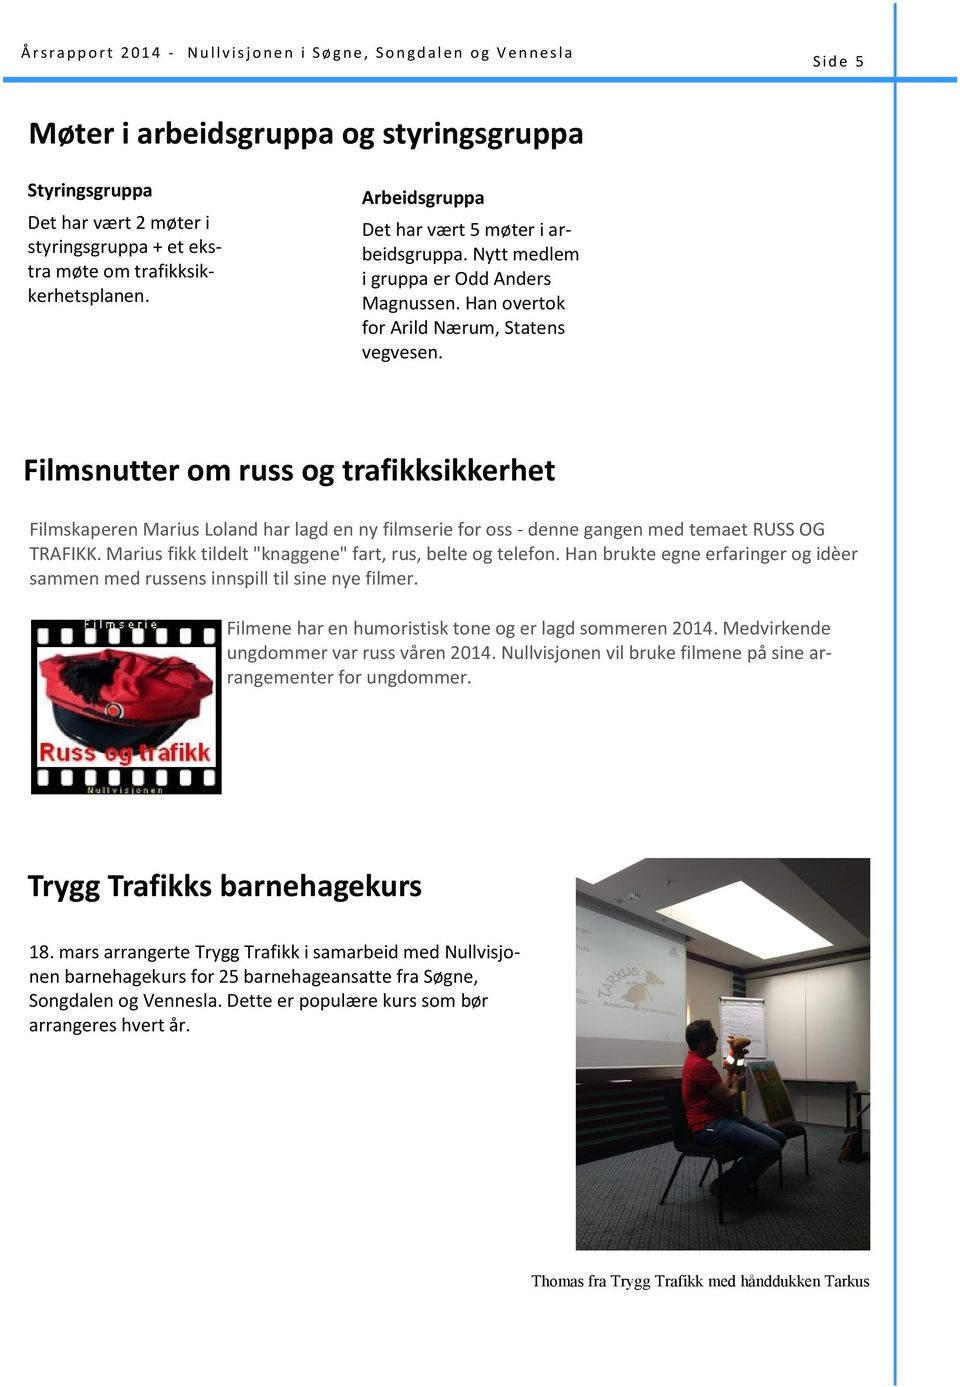 Han overtok for Arild Nærum, Statens vegvesen. Filmsnutter om russ og trafikksikkerhet Filmskaperen Marius Loland har lagd en ny filmserie for oss - denne gangen med temaet RUSS OG TRAFIKK.